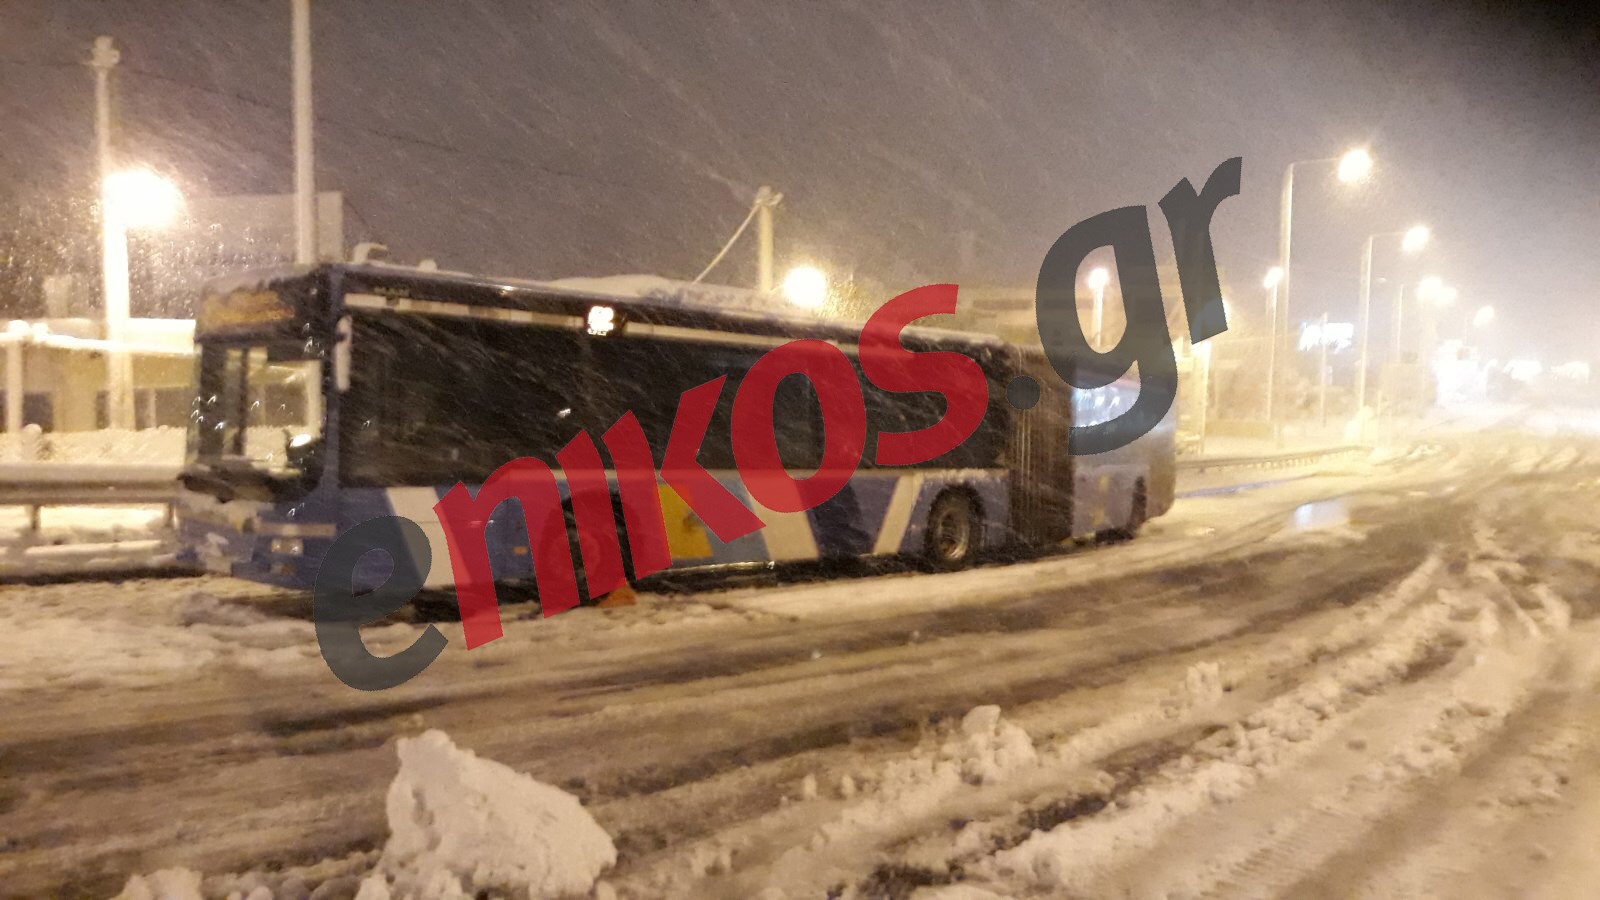 “Μήδεια”: “Κόλλησαν” στα χιόνια δύο λεωφορεία στη Λεωφόρο Σπάτων – Εγκλωβίστηκαν οι οδηγοί – ΦΩΤΟ